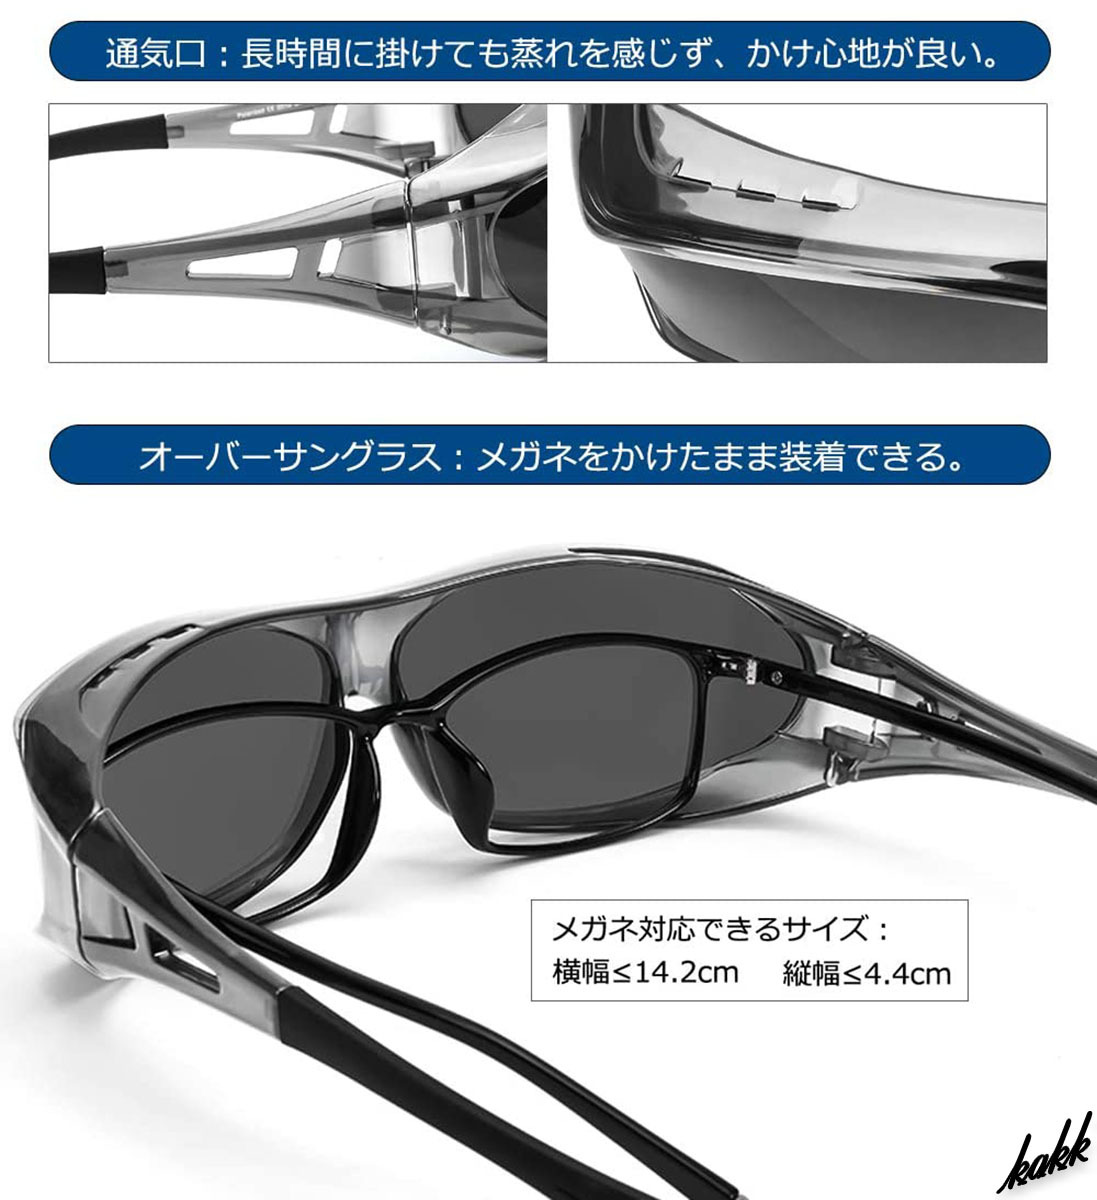 【メガネの上から装着】 オーバーサングラス 偏光グラス UV400 パノラマデザイン 日焼け防止 サイクリング ドライブ ランニング グレー